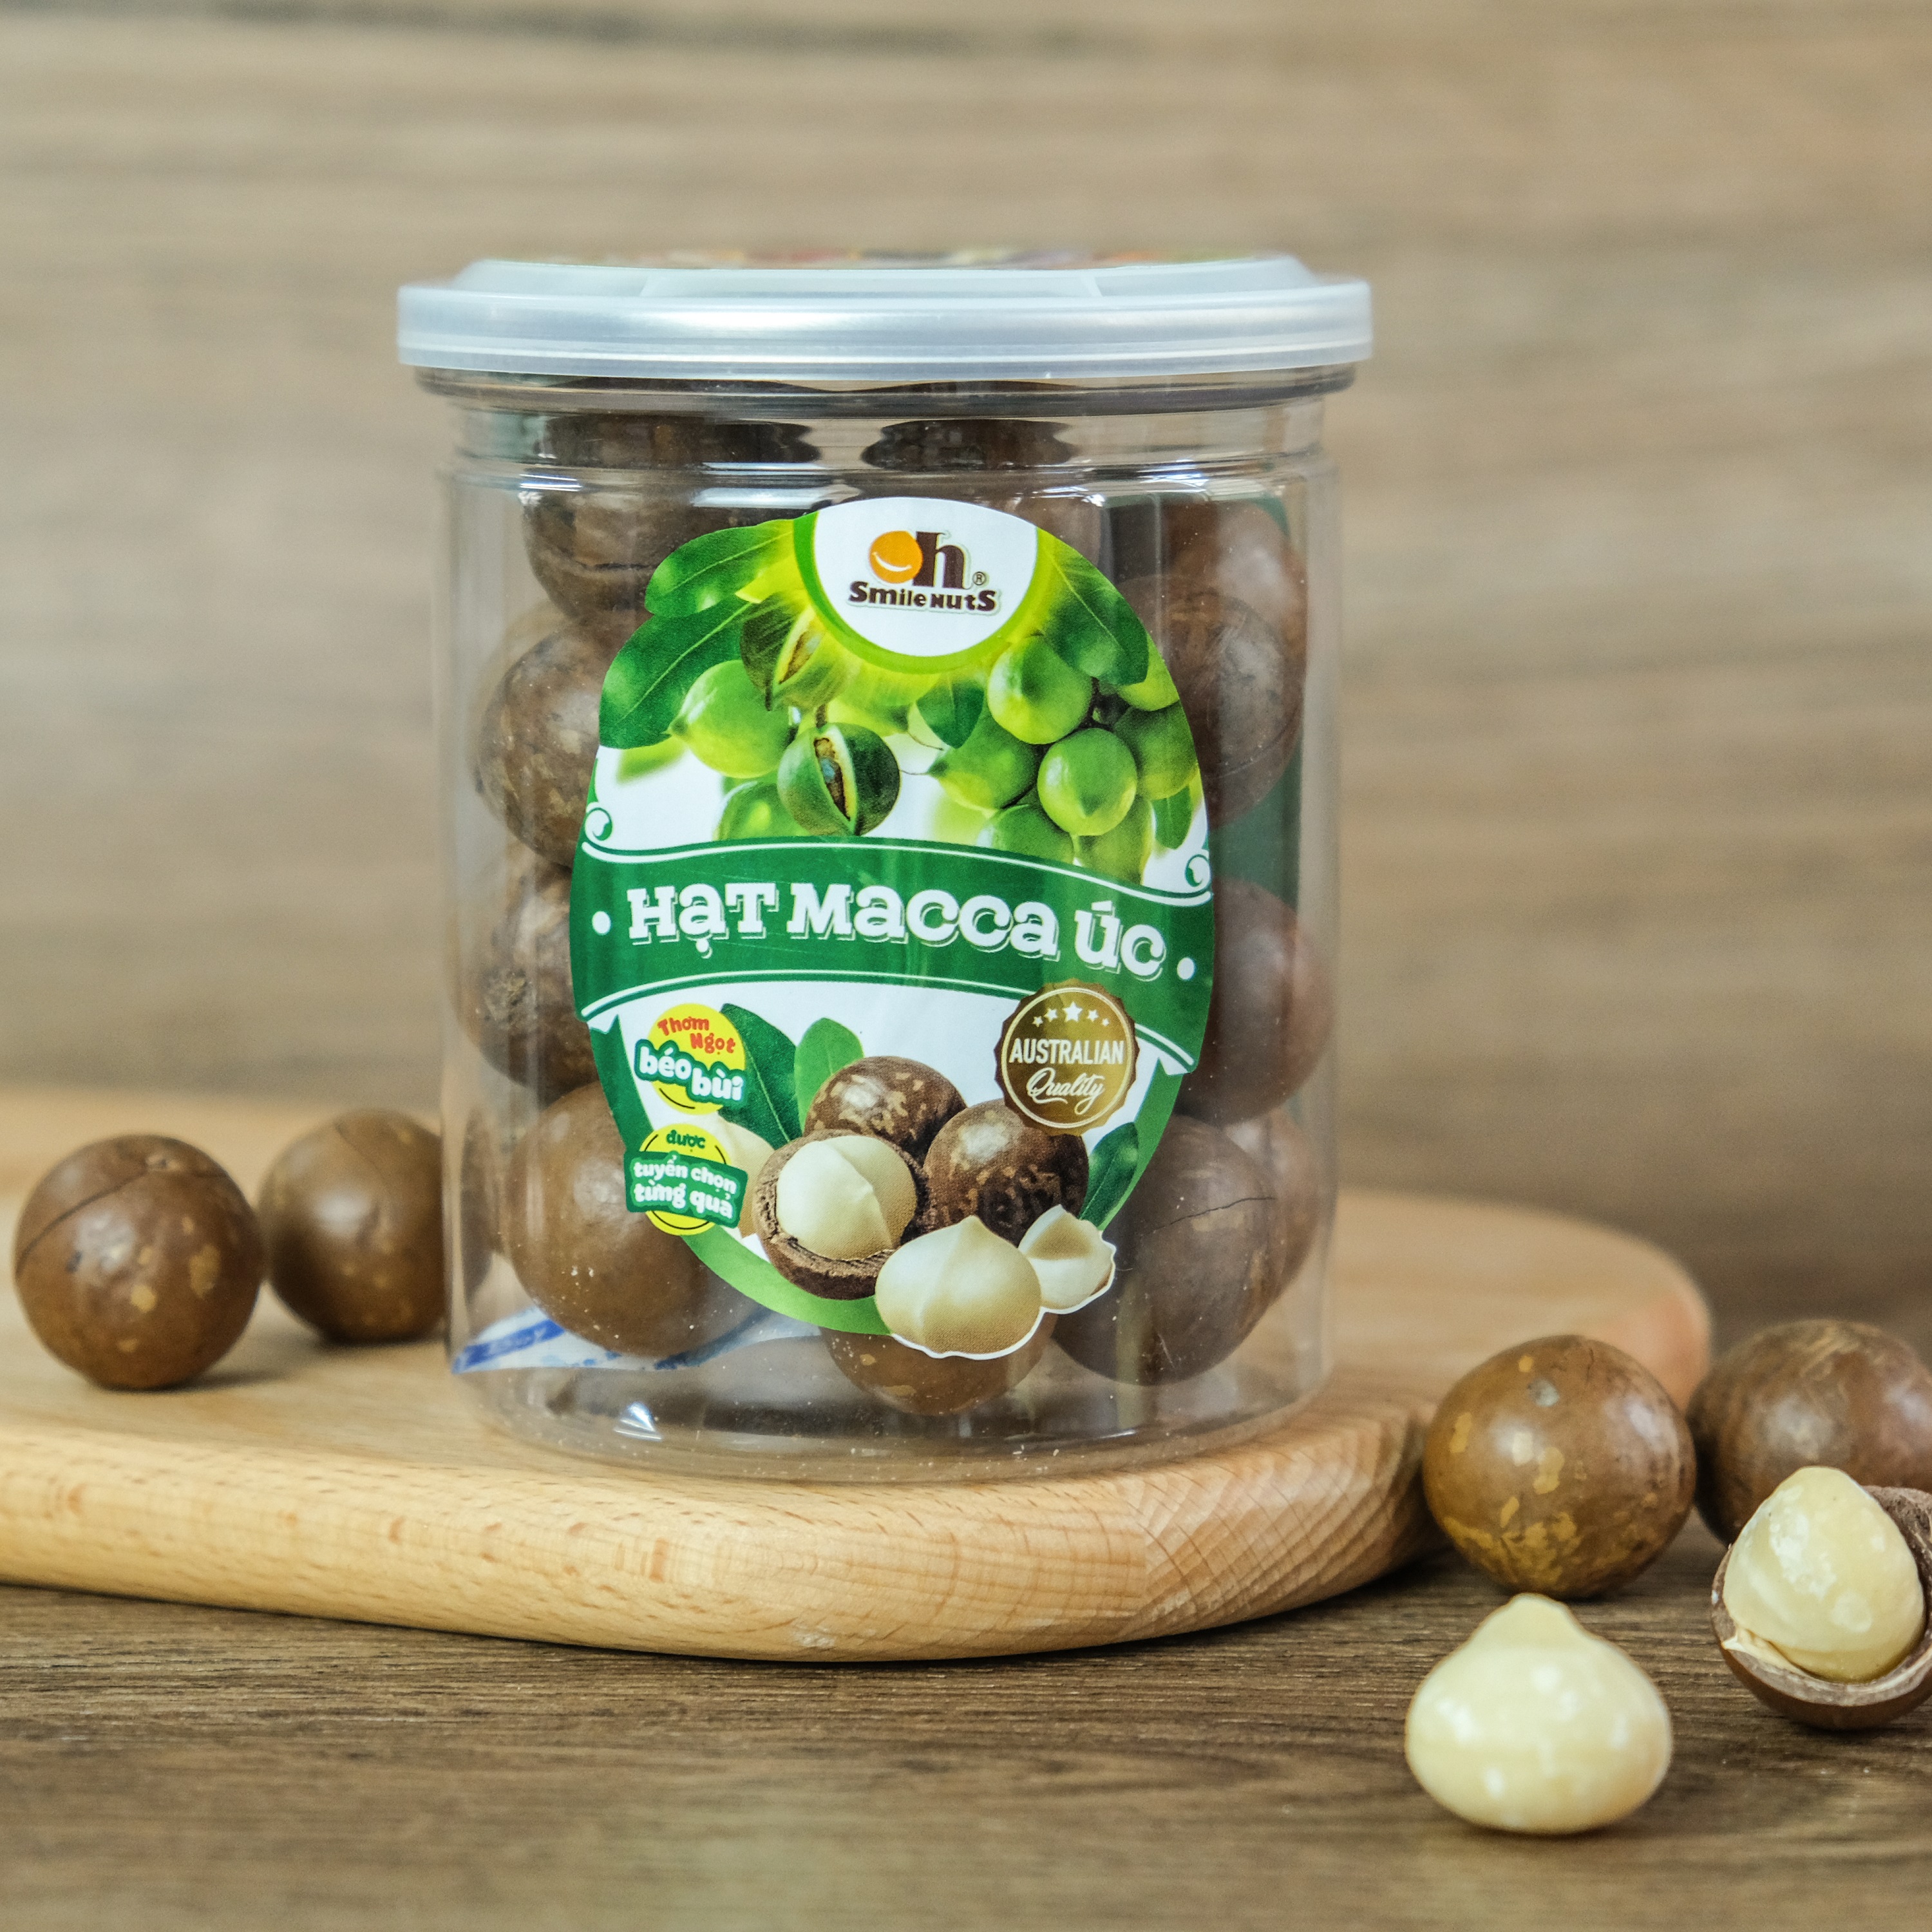 Hạt Macca Úc nứt vỏ Smile Nuts (215g - 500g) | 100% nhập khẩu từ Úc, giòn béo, thơm ngon